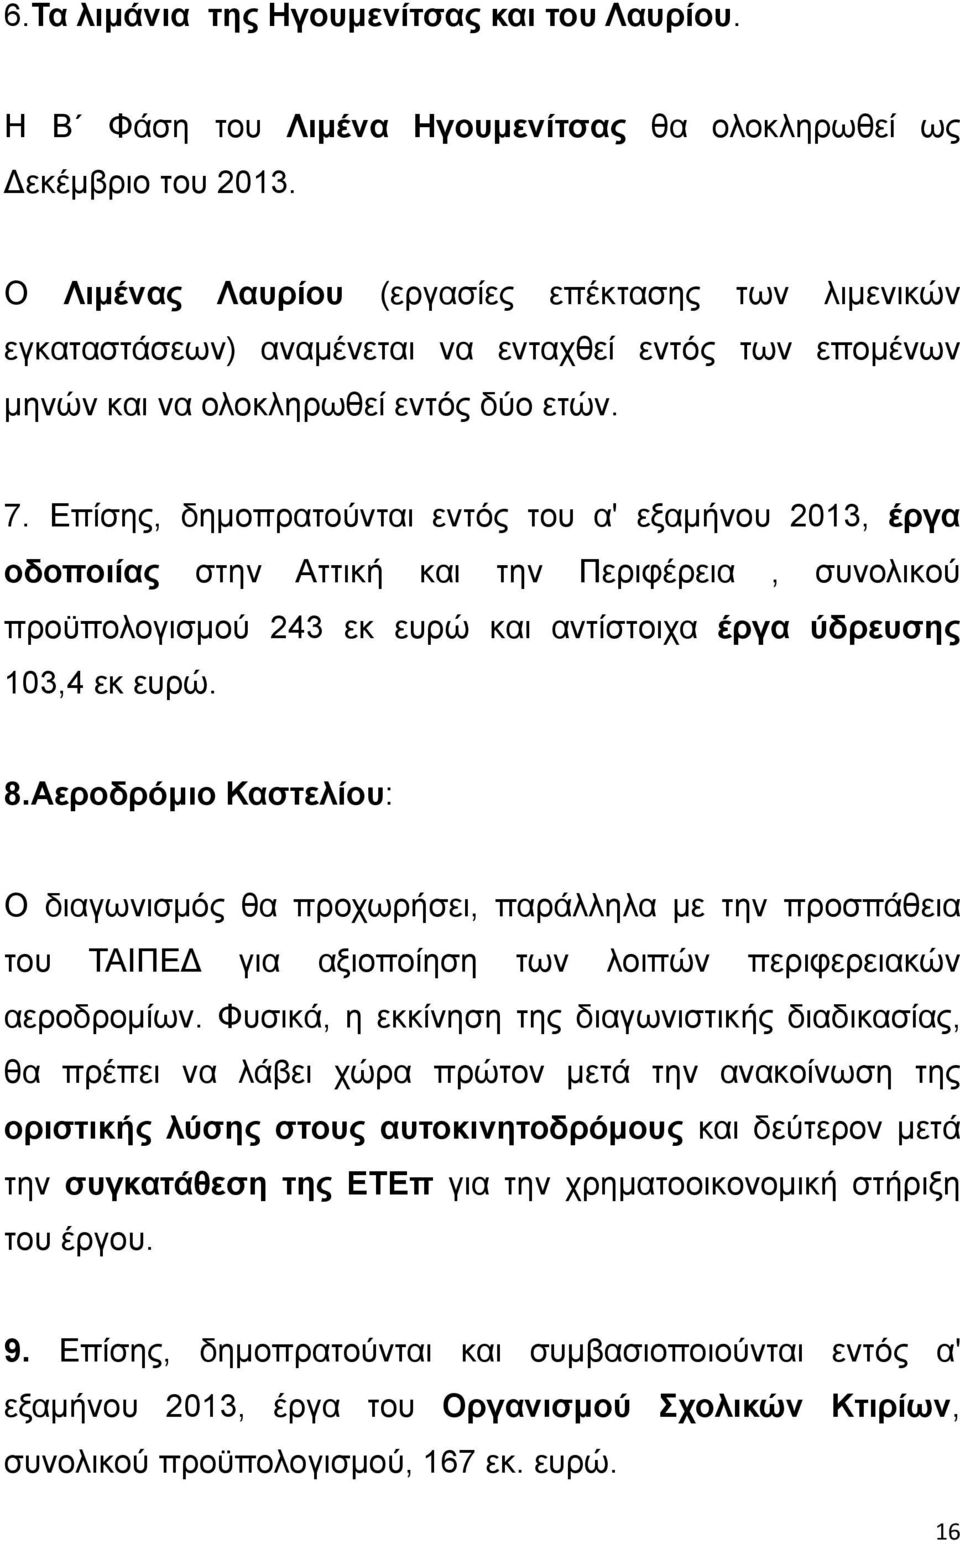 Επίσης, δημοπρατούνται εντός του α' εξαμήνου 2013, έργα οδοποιίας στην Αττική και την Περιφέρεια, συνολικού προϋπολογισμού 243 εκ ευρώ και αντίστοιχα έργα ύδρευσης 103,4 εκ ευρώ. 8.